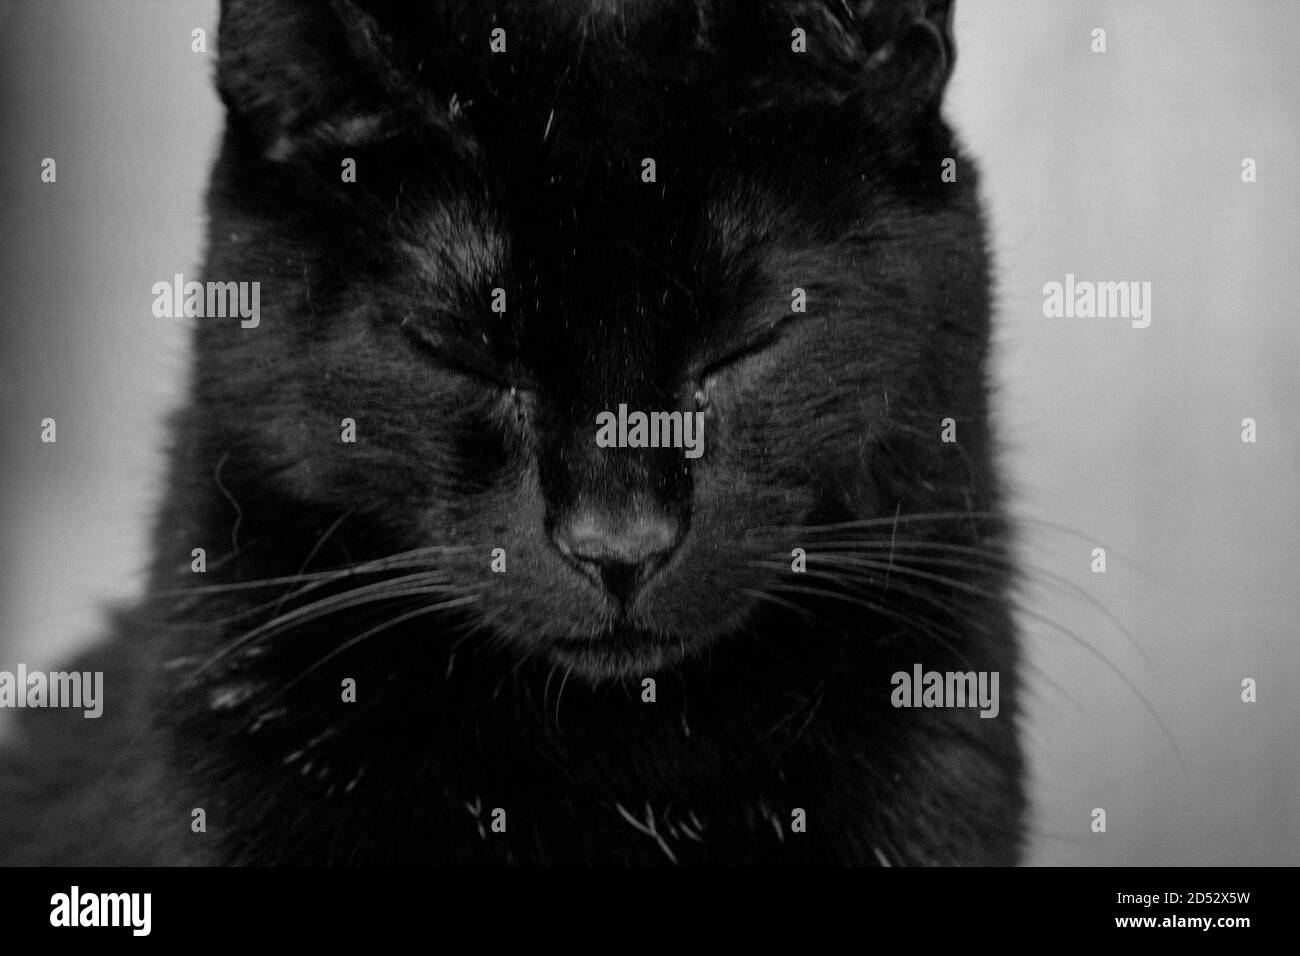 Black cat isolated on grey background Stock Photo